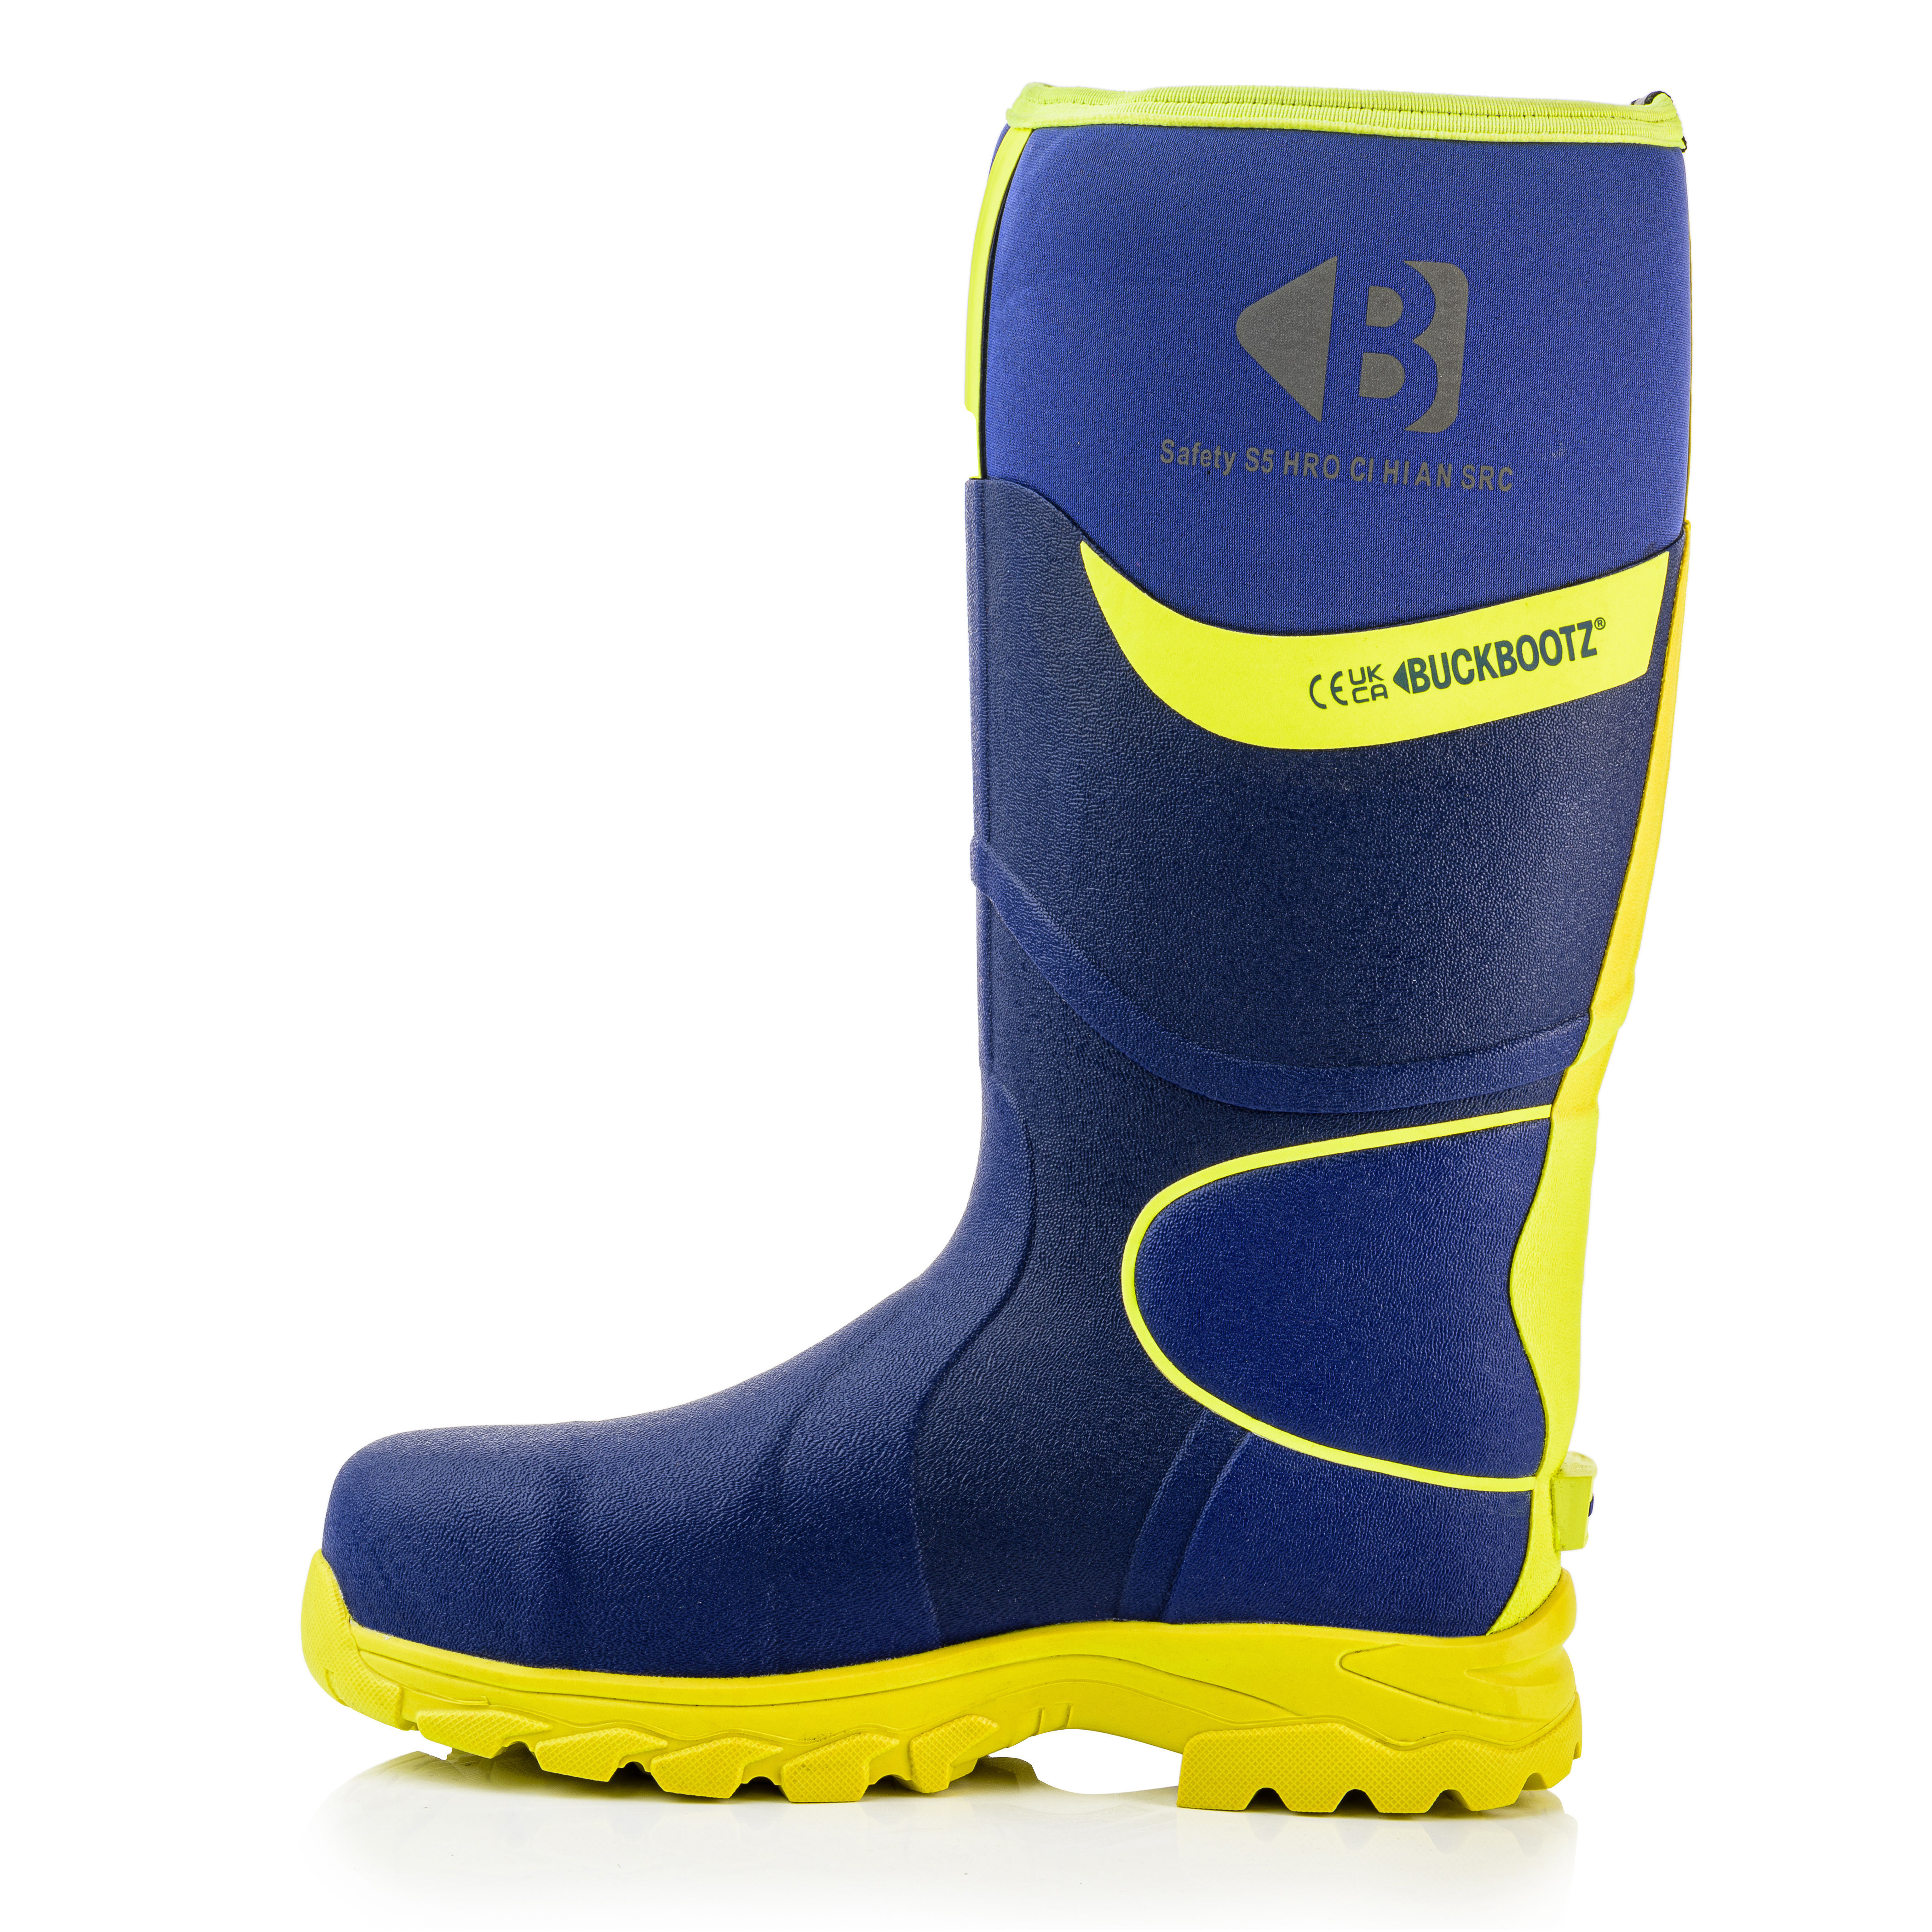 Buckbootz Hi-Vis Wellington Safety Boots Blue/Yellow - BBZ8000BLYL